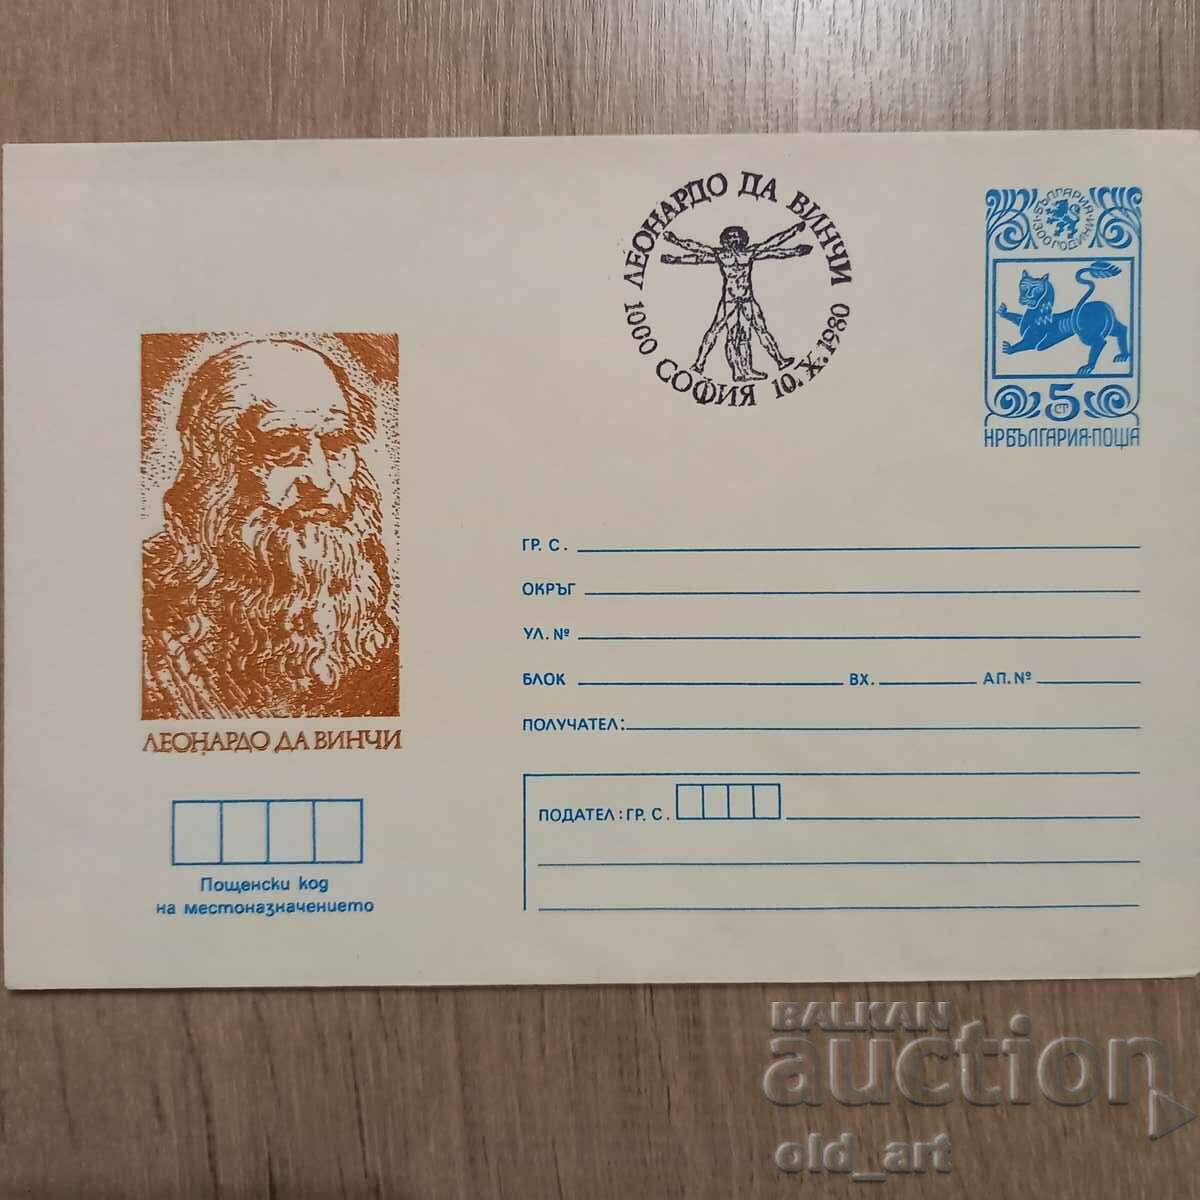 Ταχυδρομικός φάκελος - Leonardo da Vinci